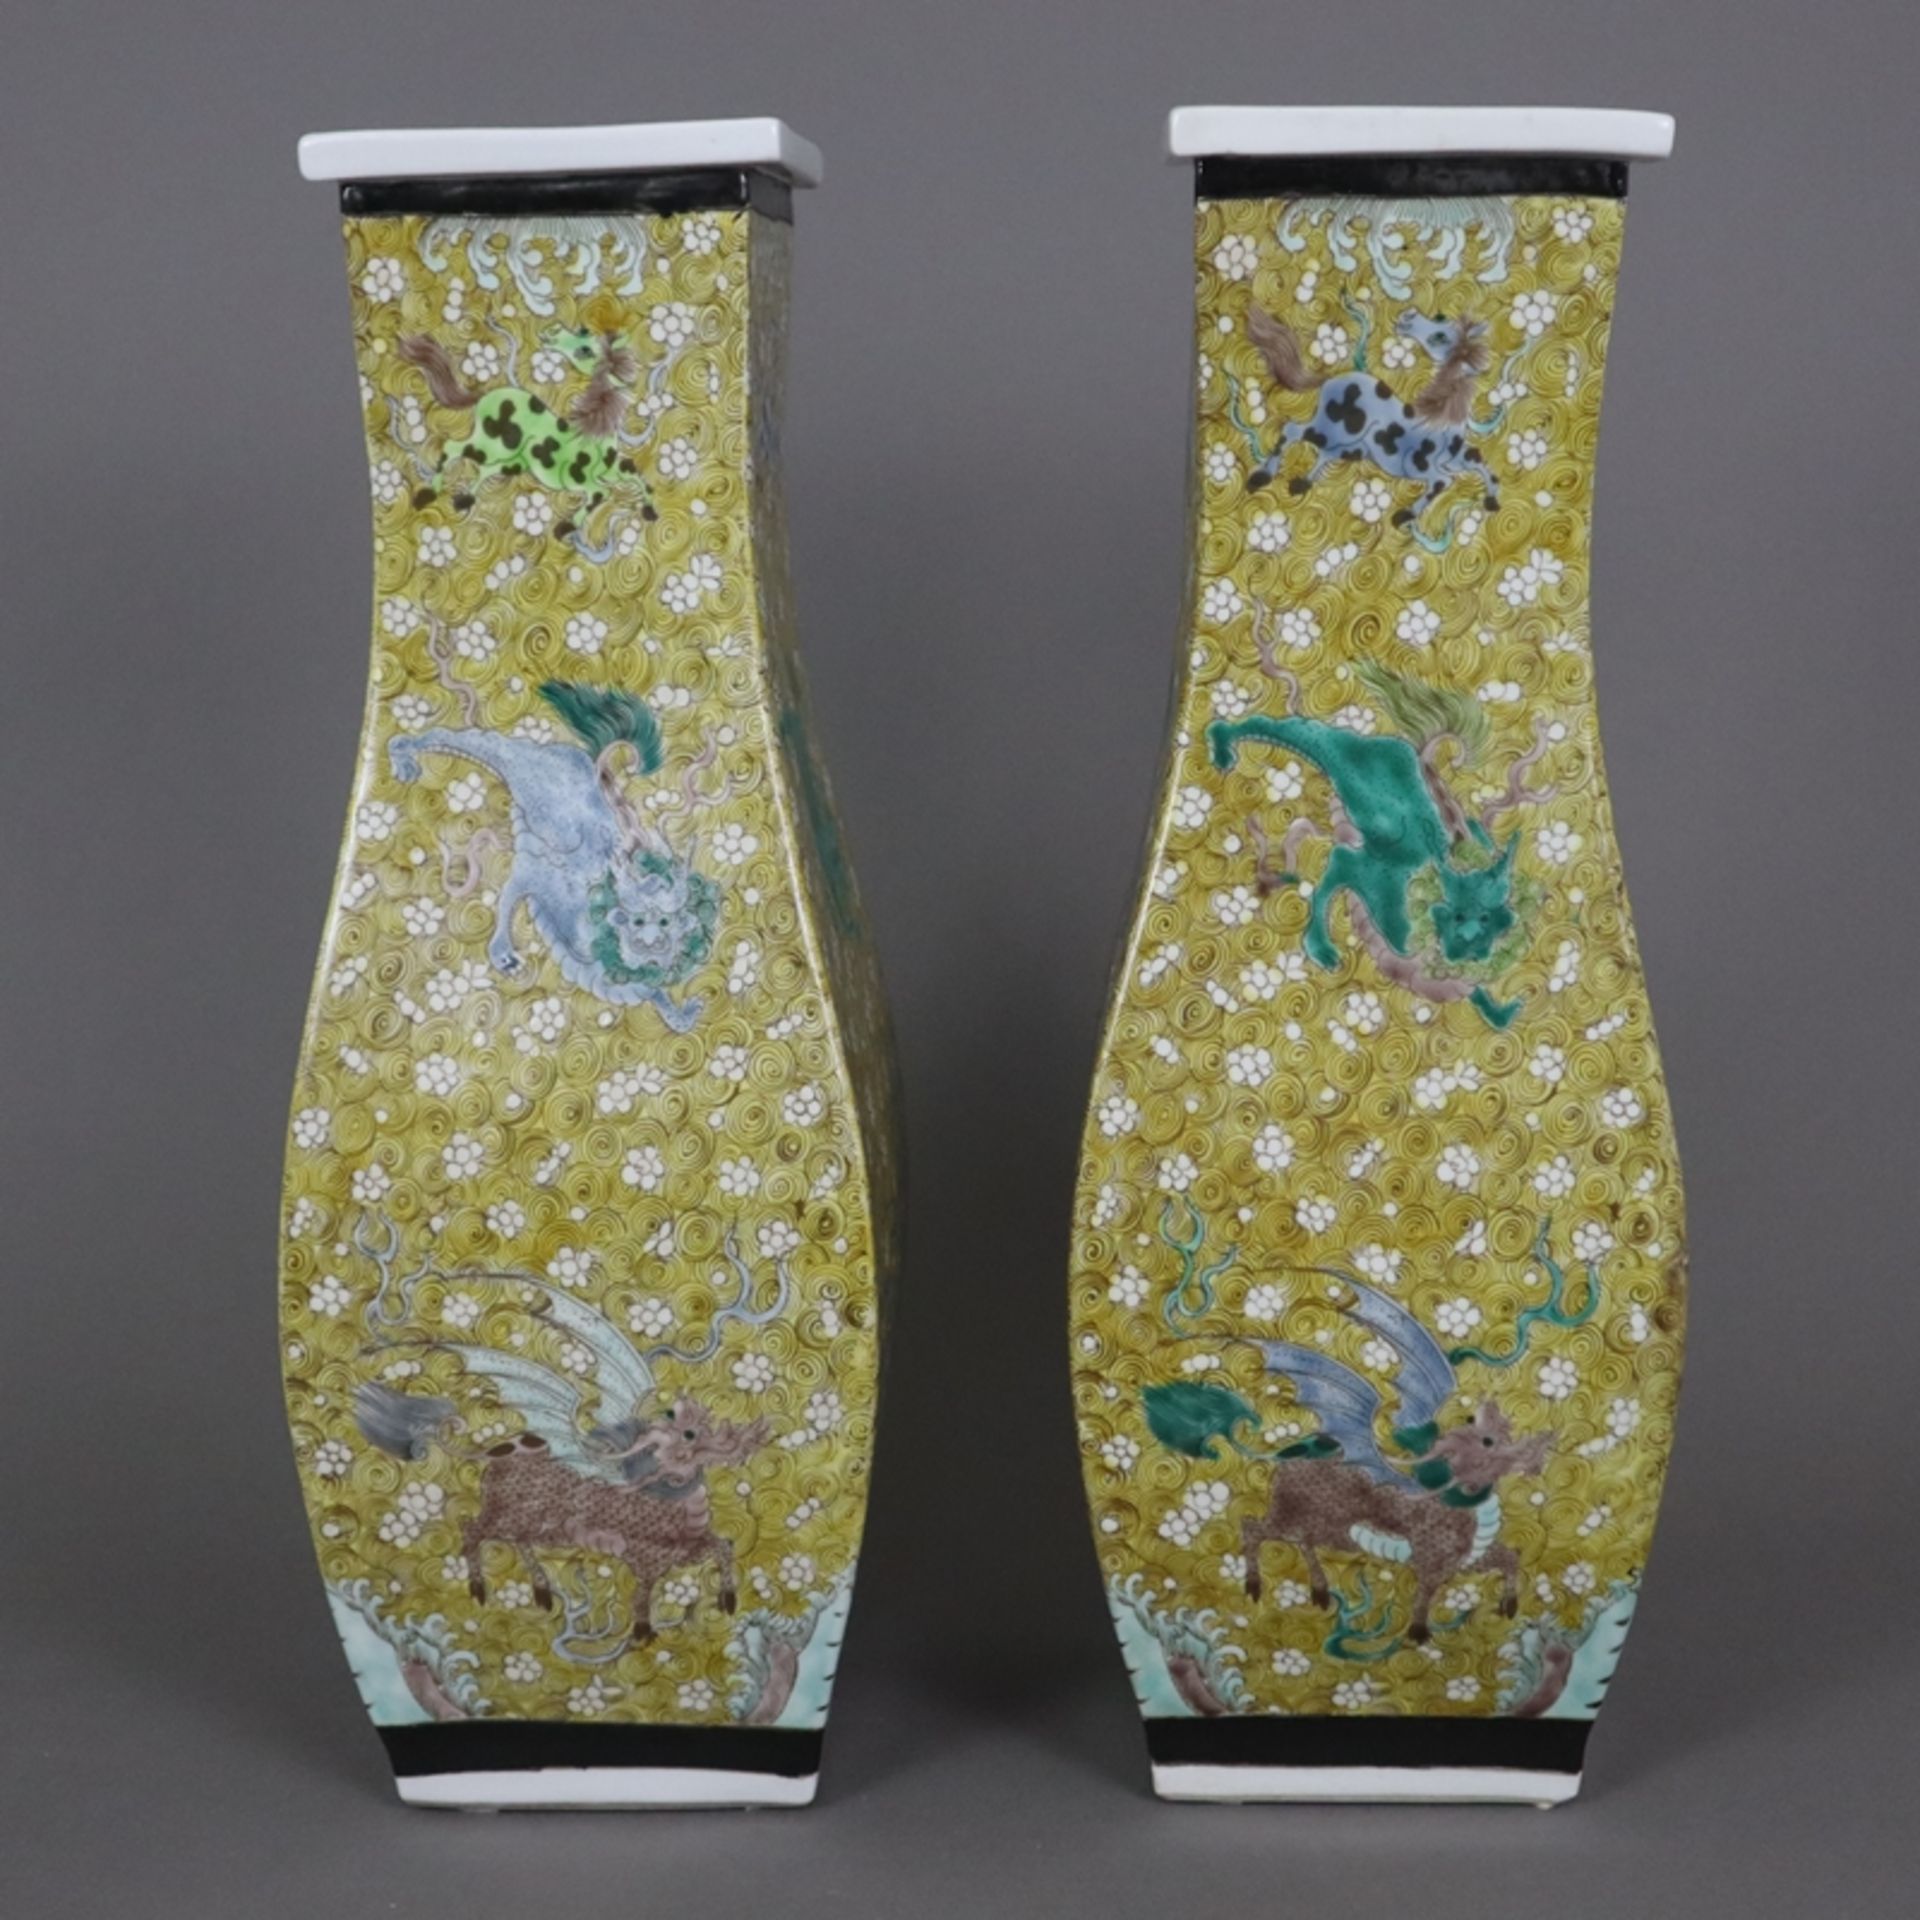 Ein Paar Vasen - China, ausgehende Qing-Dynastie, gebauchte Vierkantwandung mit flachem vorkragende